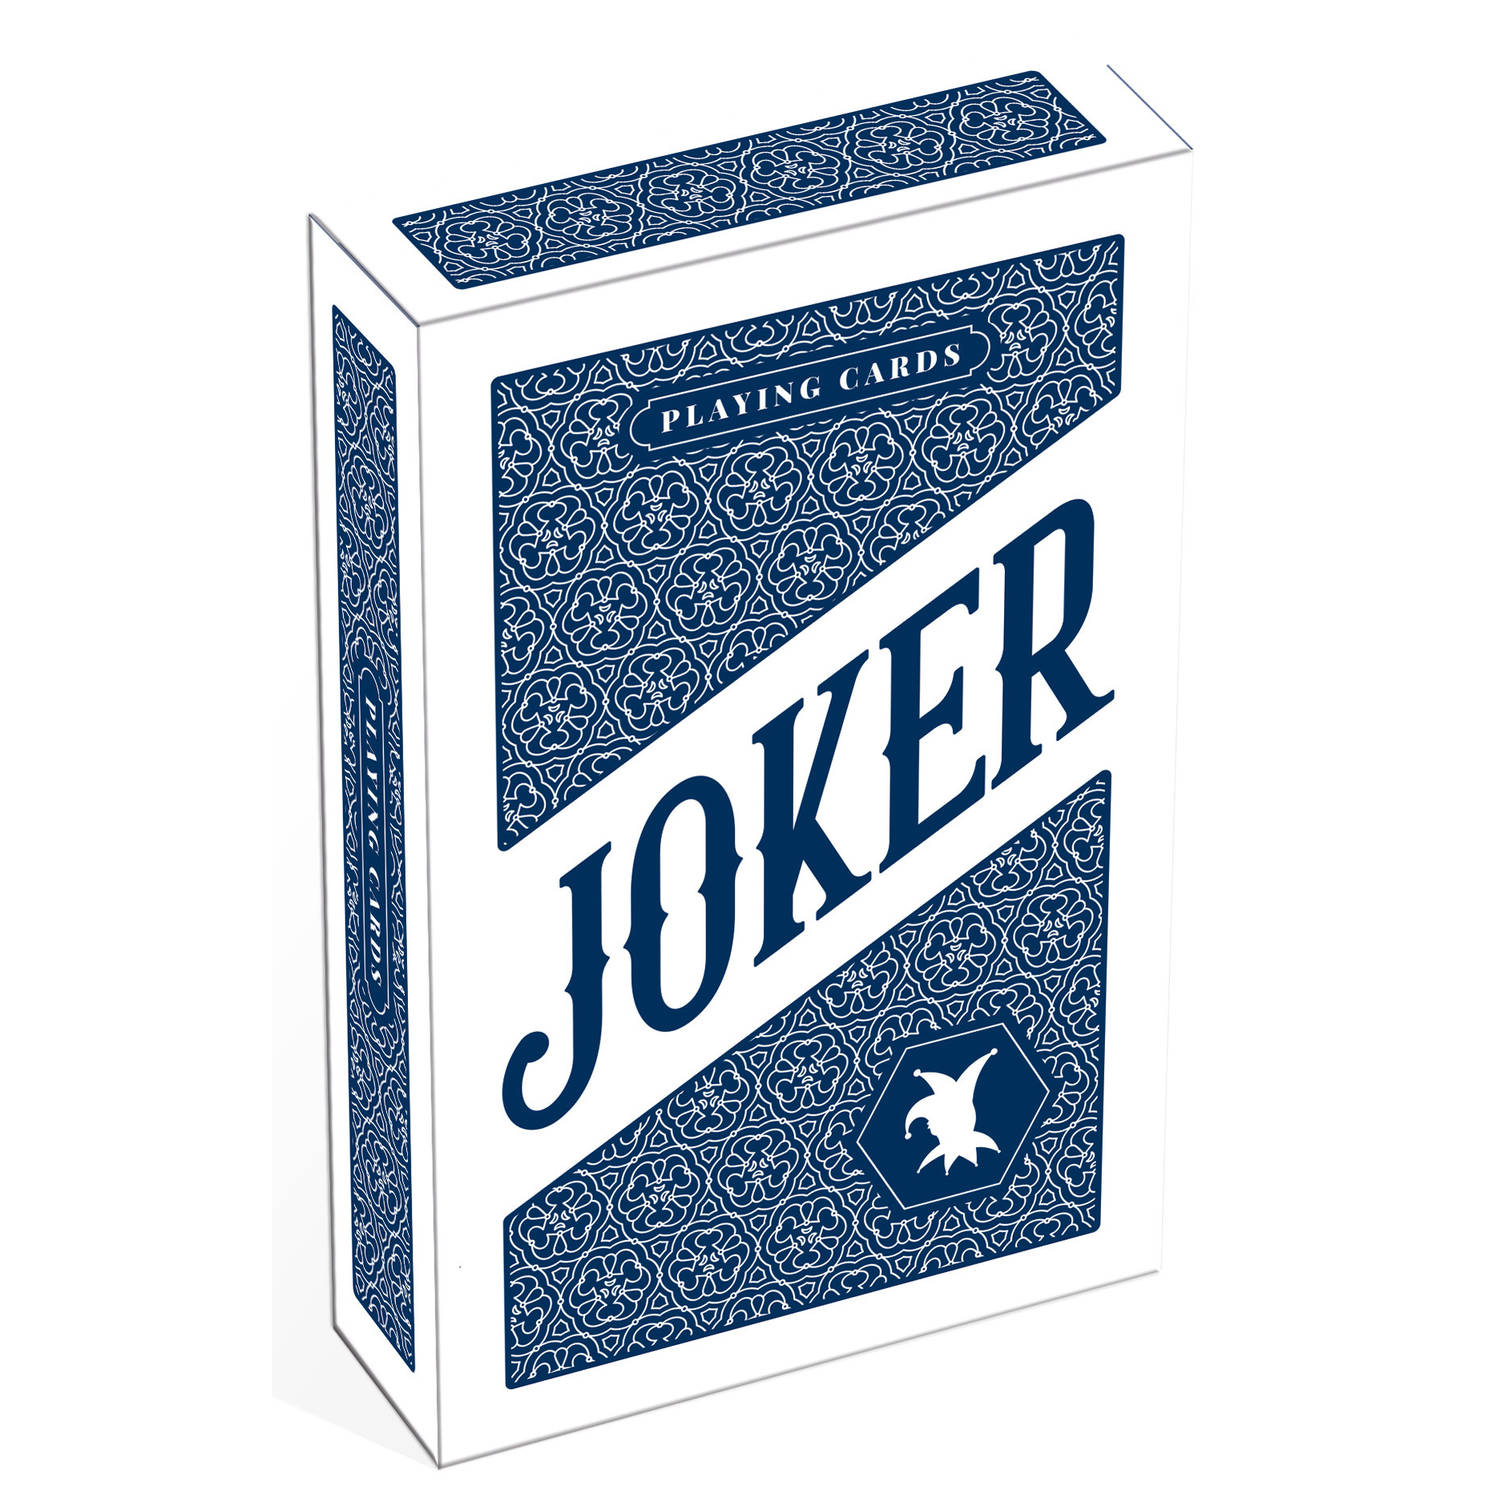 Cartamundi speelkaarten Bridge Joker karton blauw-wit